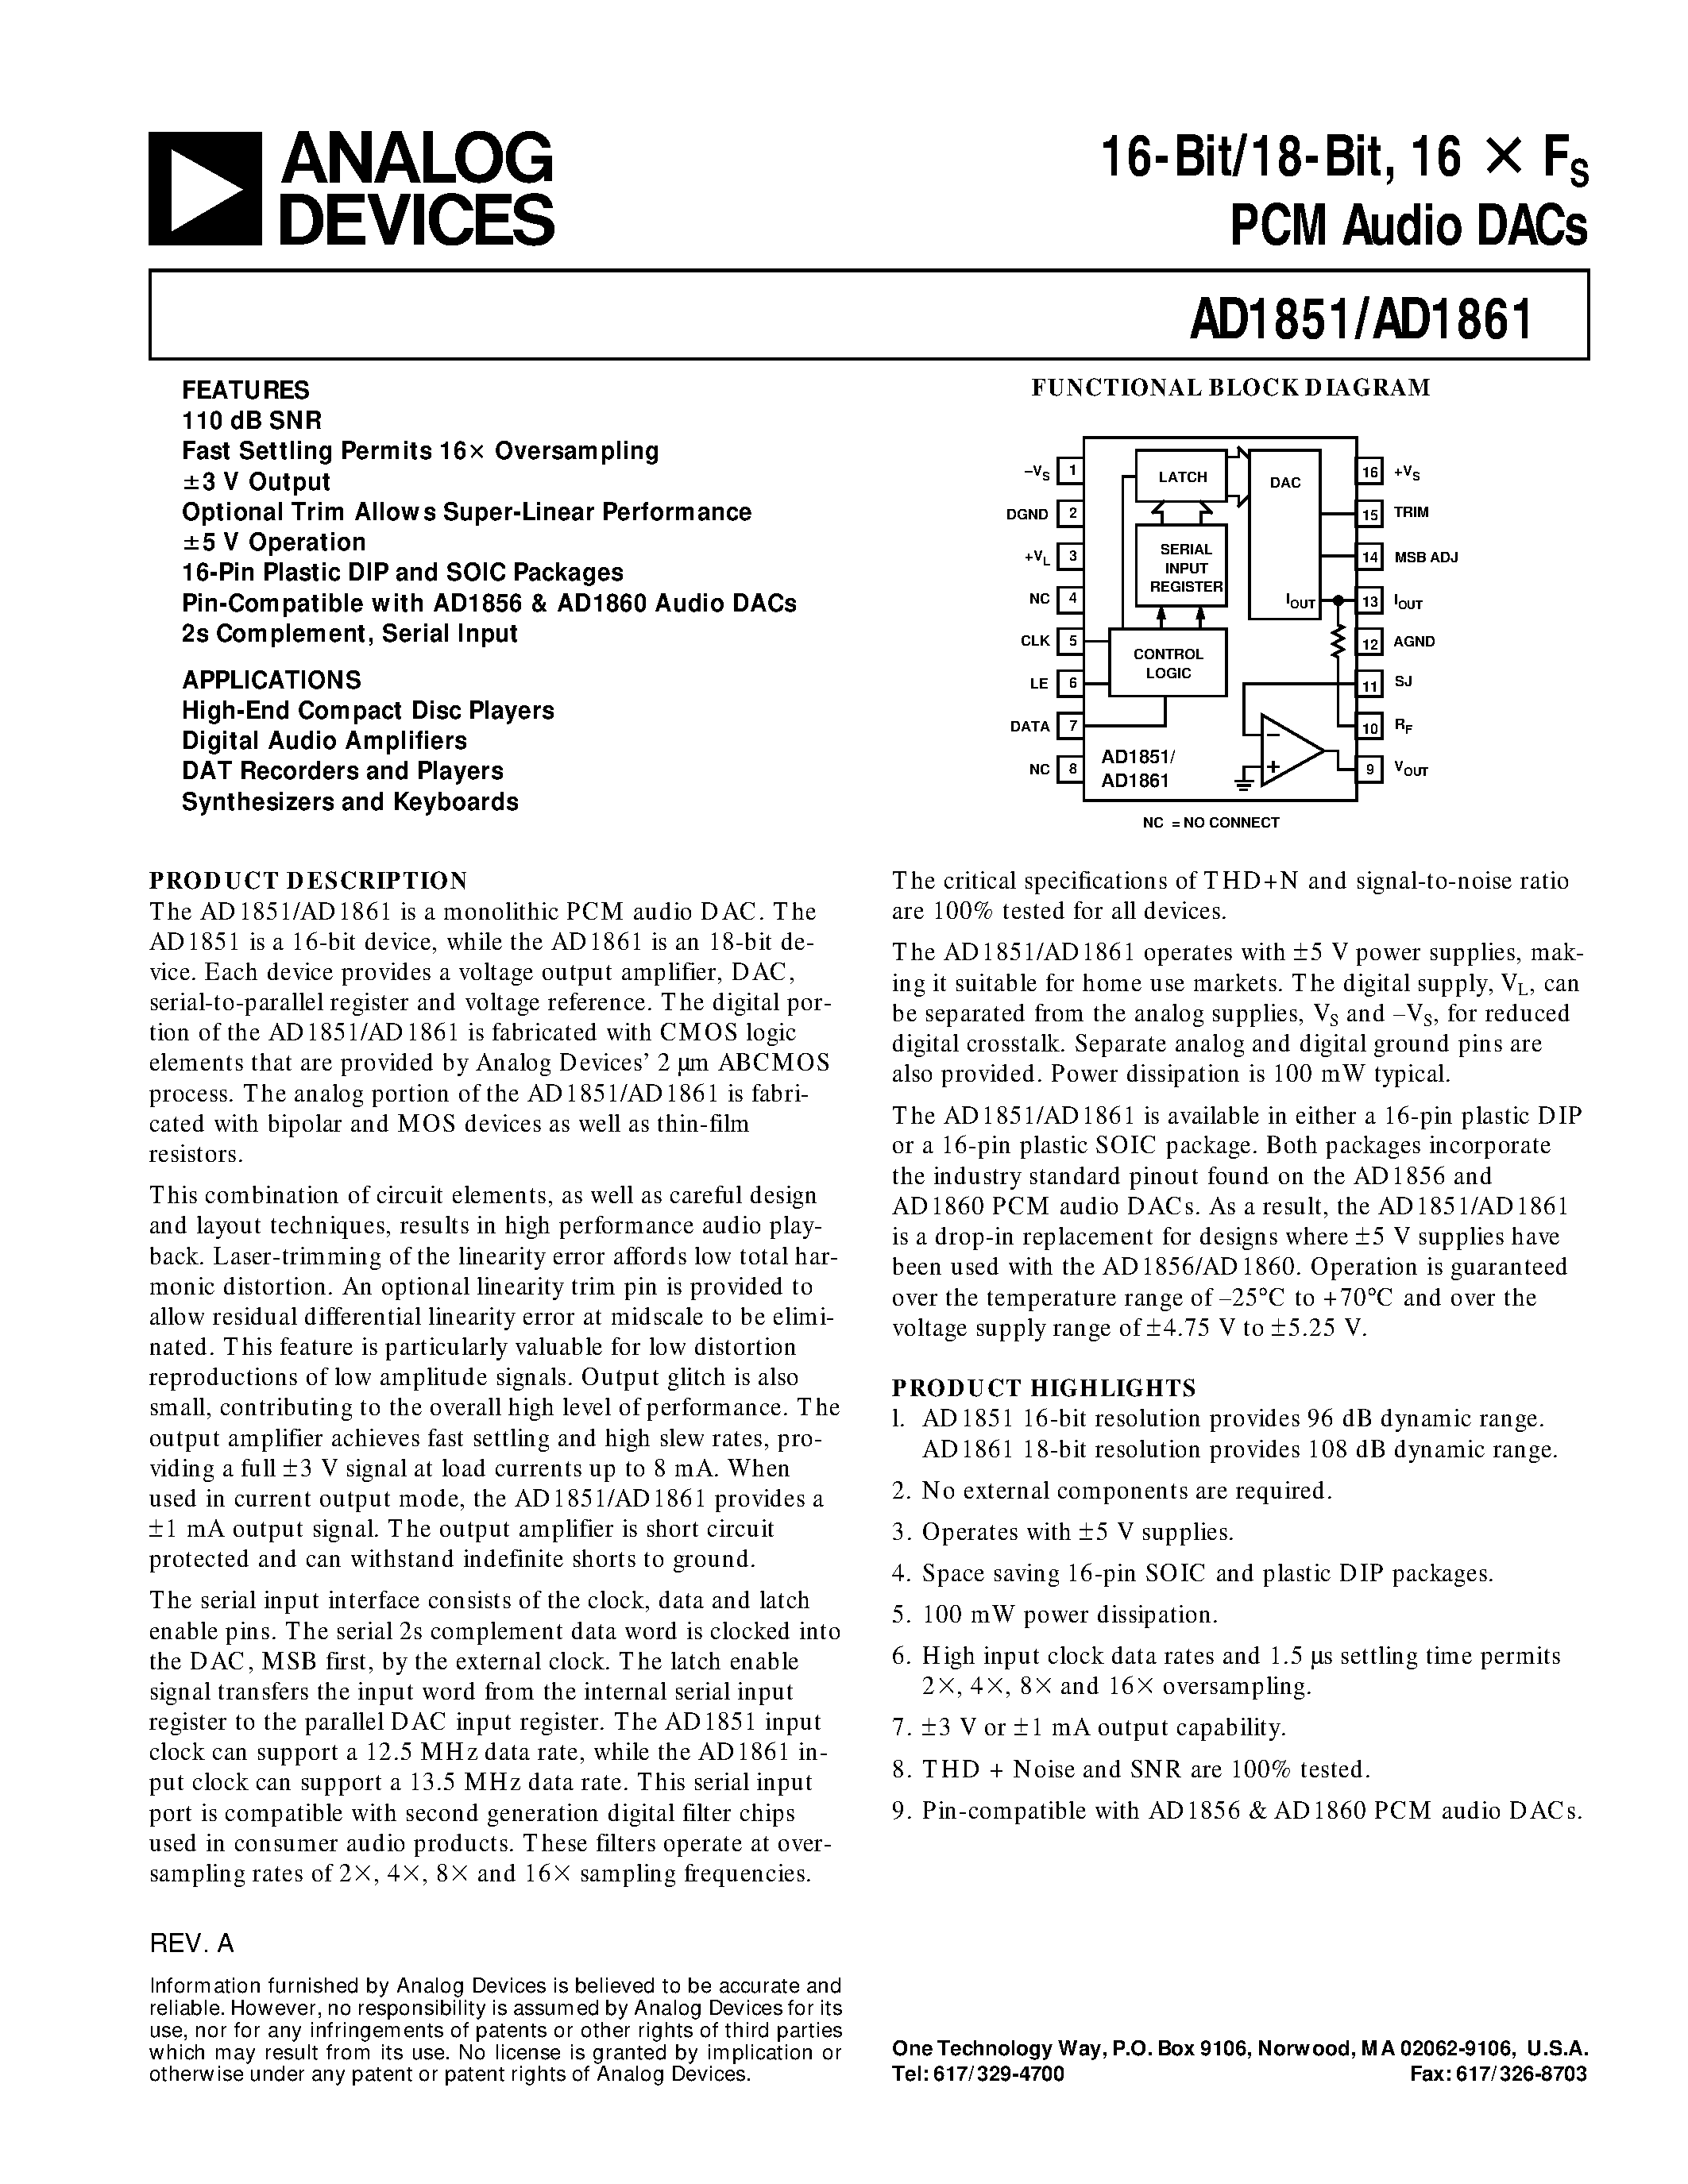 Даташит AD1861R-J - 16-Bit/18-Bit/ 16 X Fs PCM Audio DACs страница 1